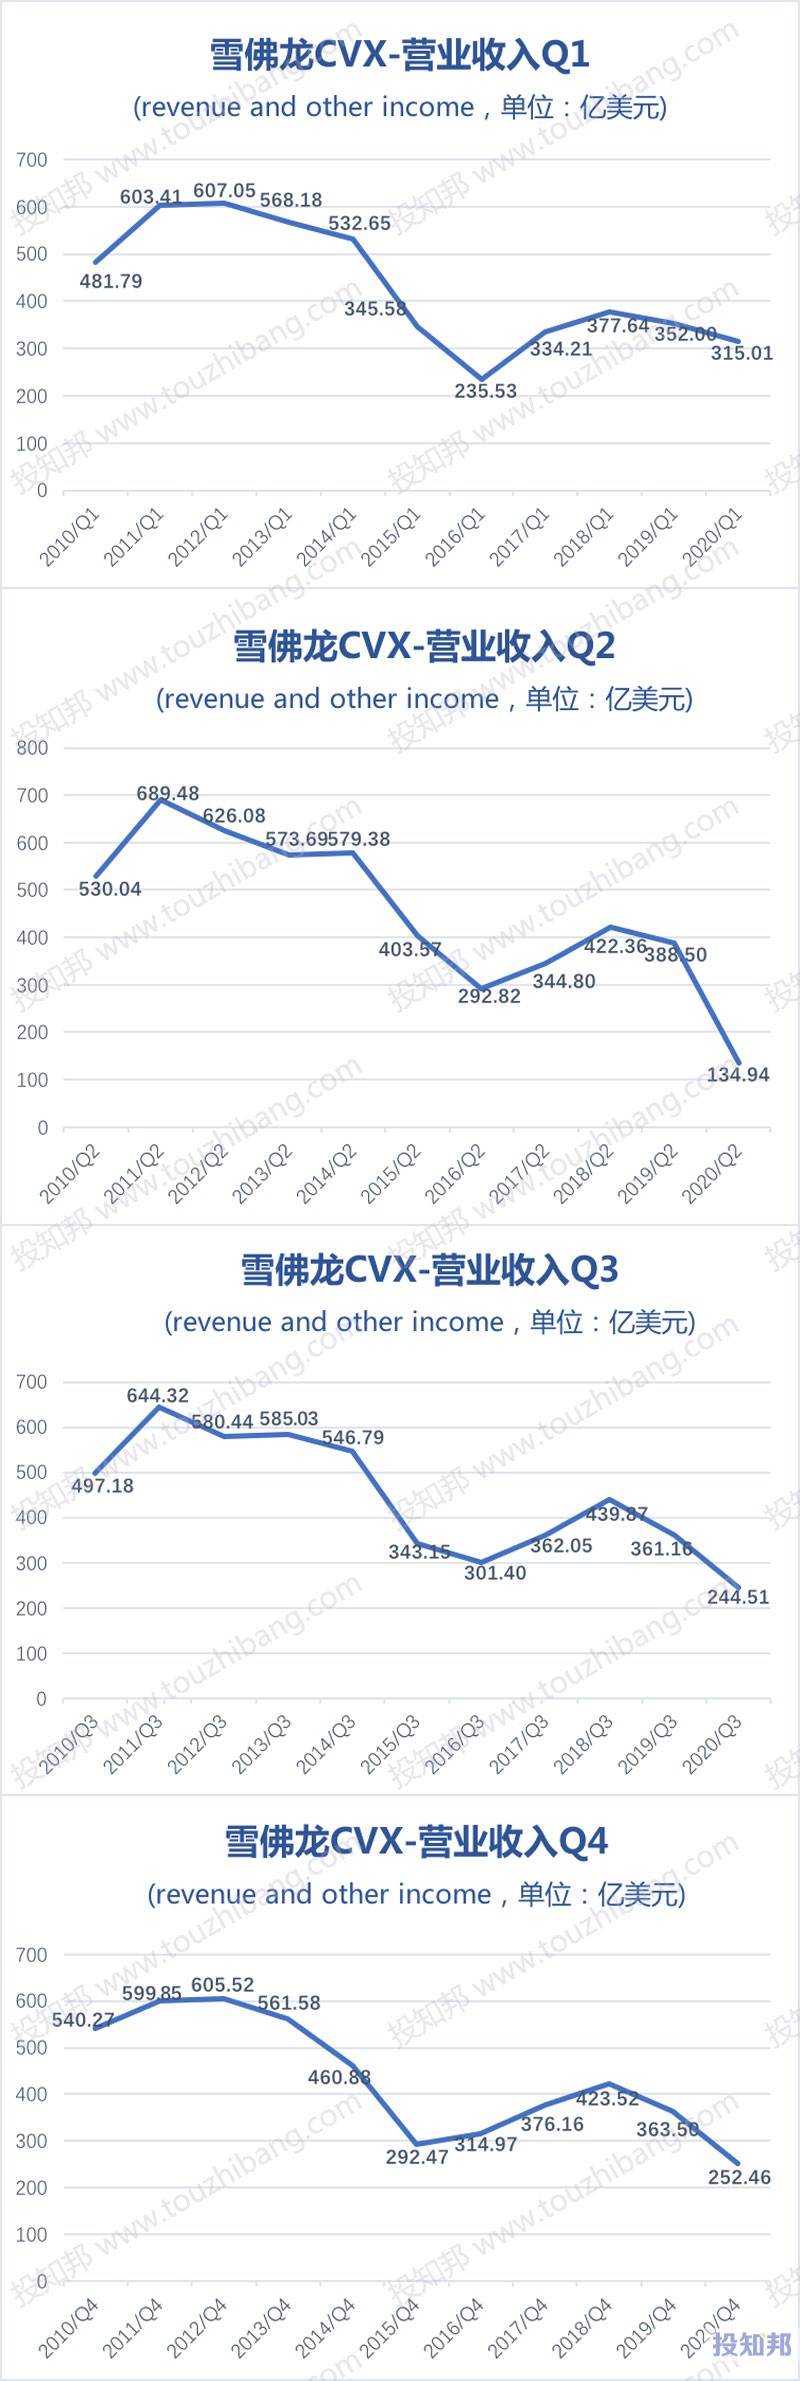 雪佛龙(CVX)财报数据图示(2010~2020年，更新)